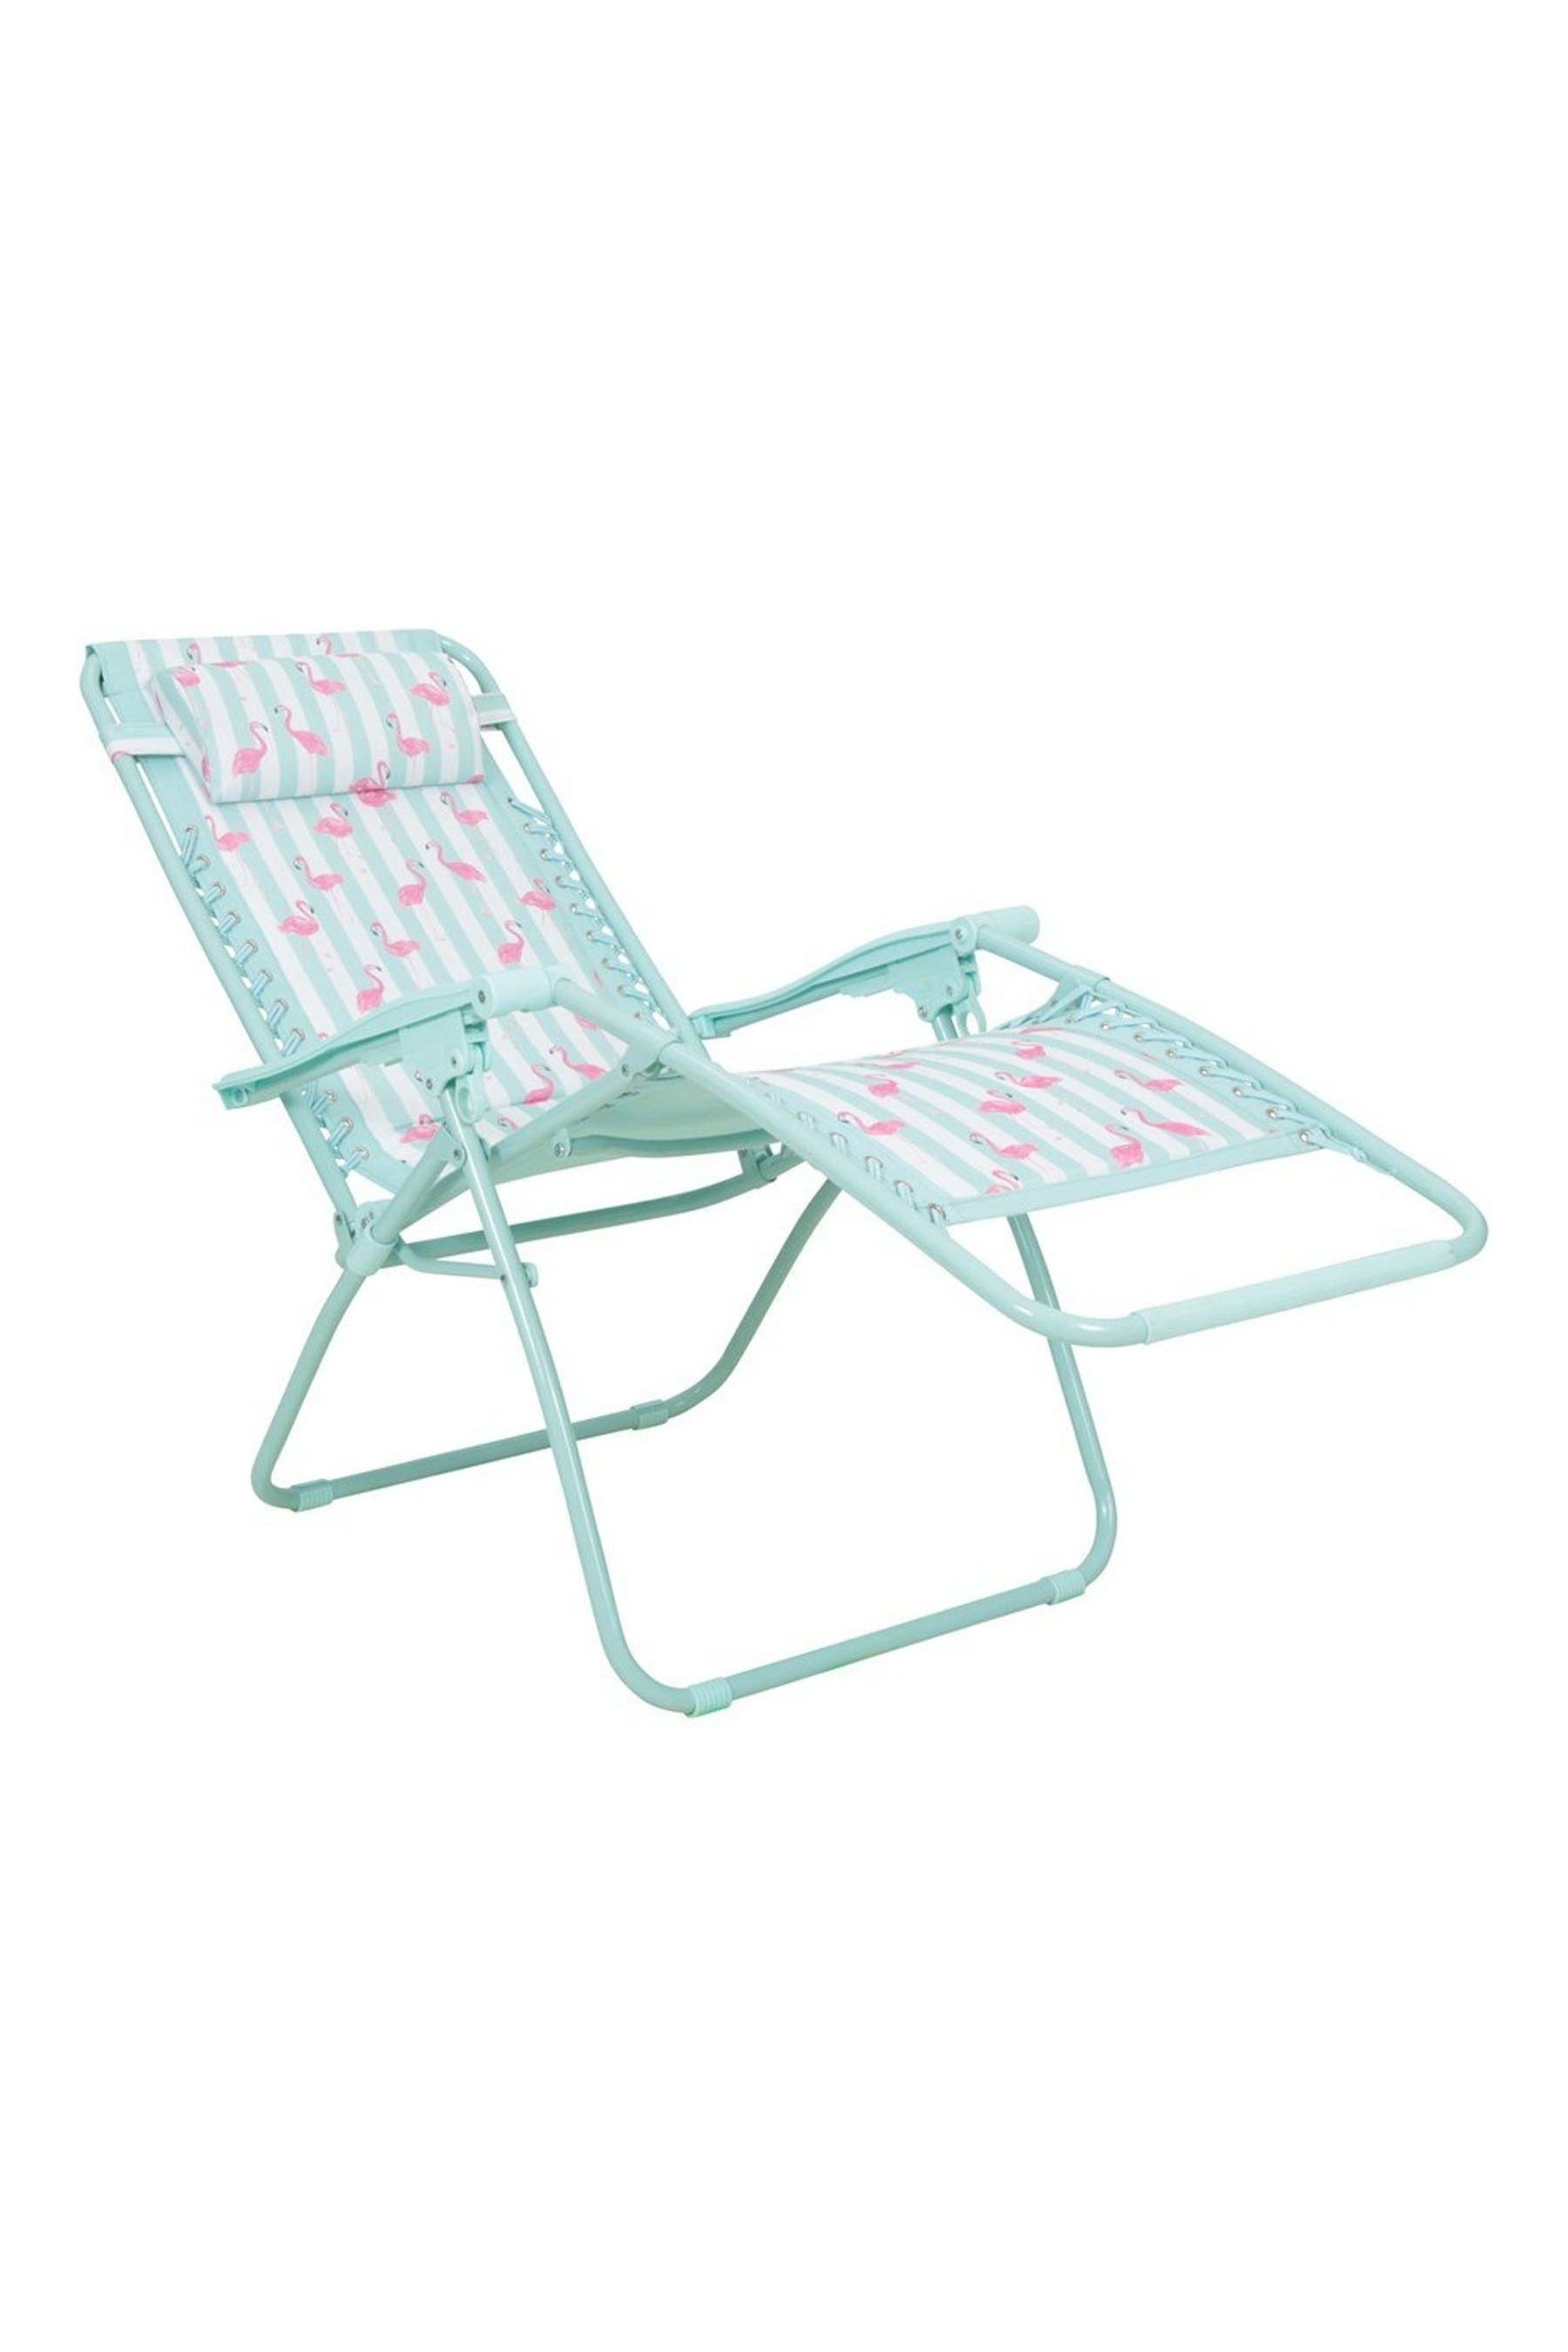 Creatice Mountain Warehouse Beach Chair 